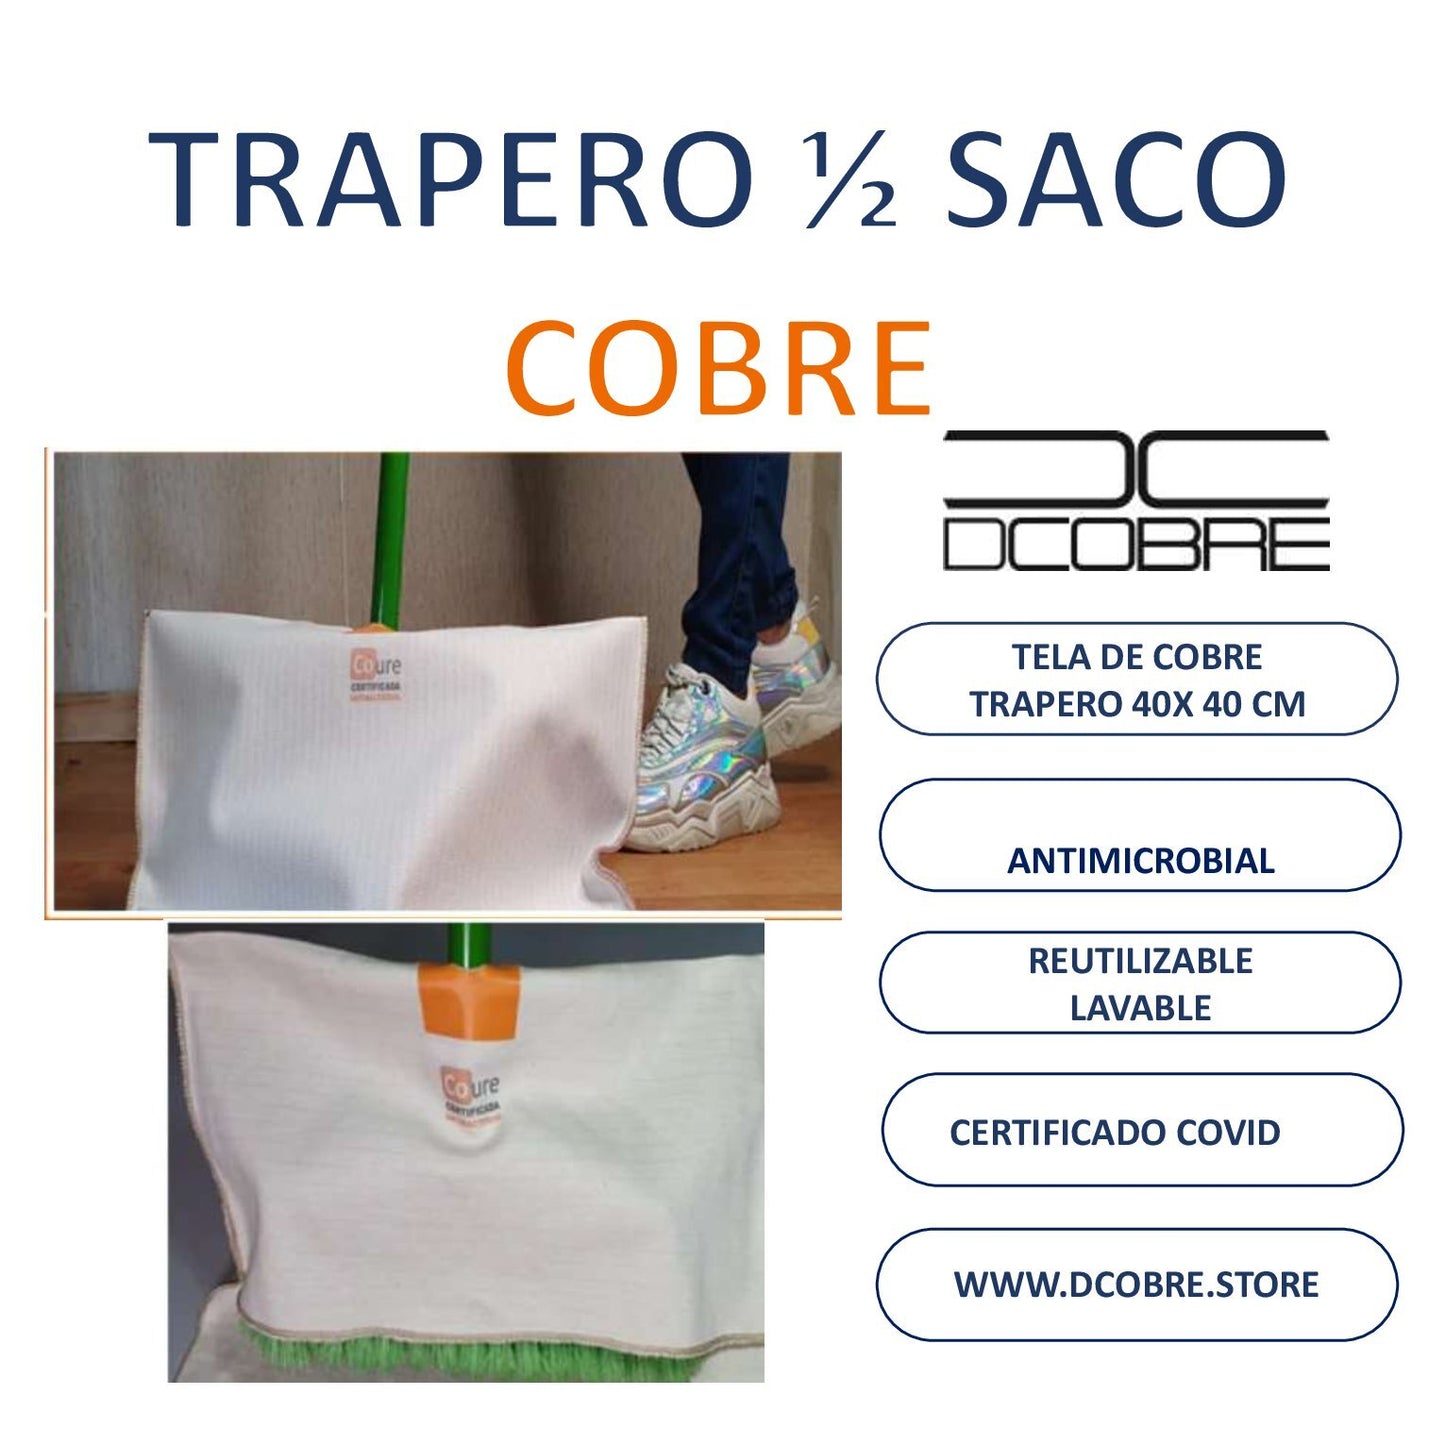 Trapero 1/2 saco con COBRE activo - DCobre